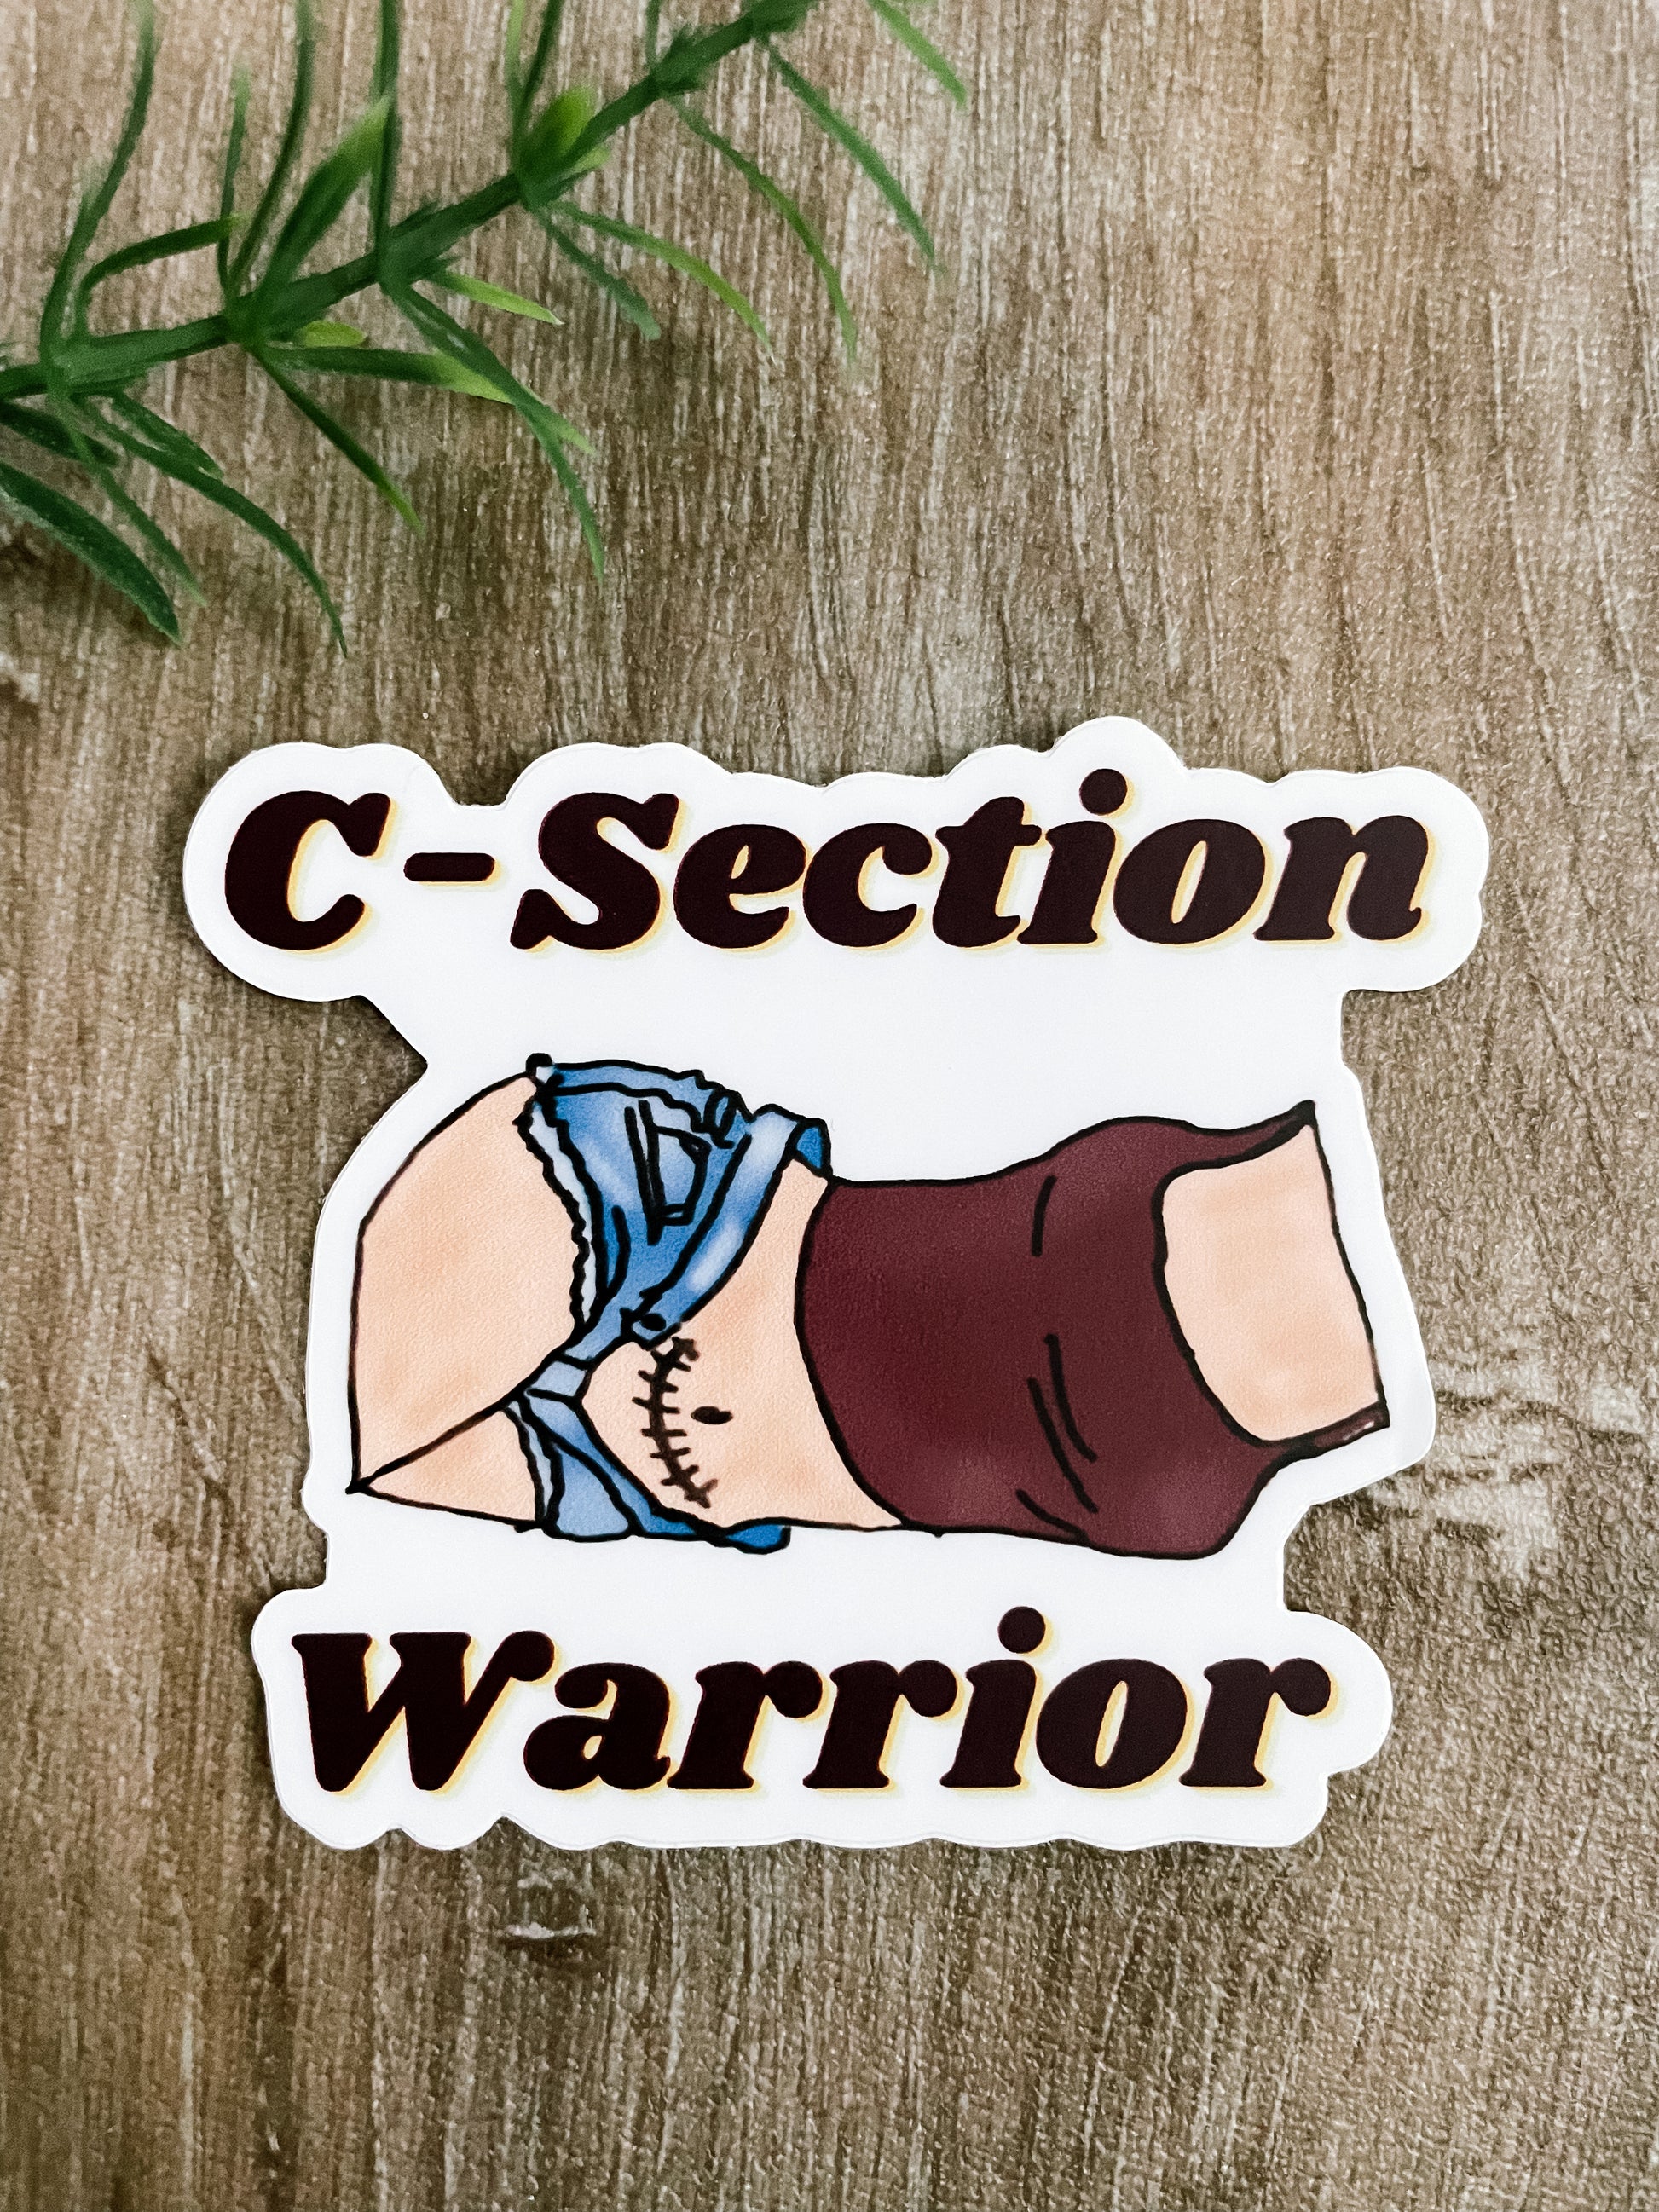 C Section warrior sticker fair skin